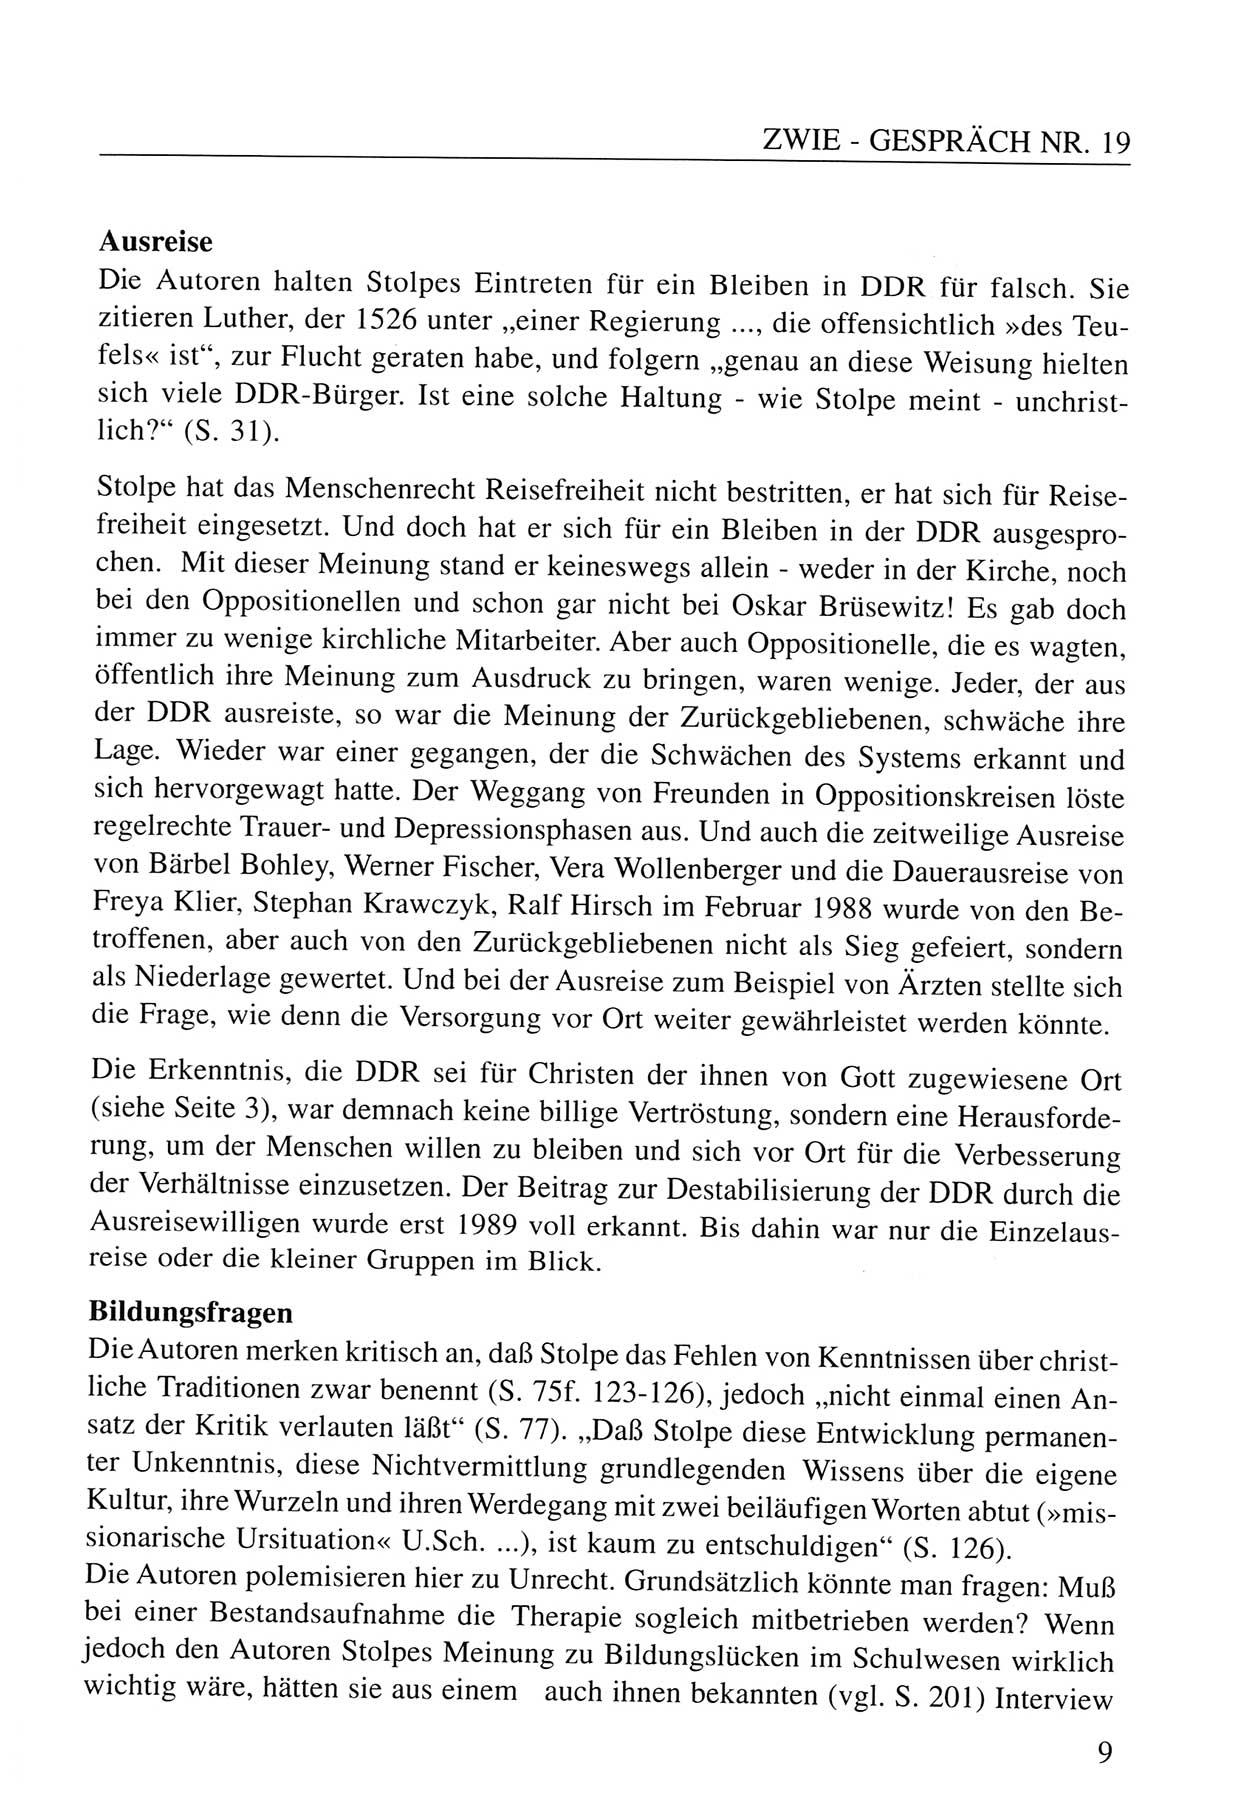 Zwie-Gespräch, Beiträge zum Umgang mit der Staatssicherheits-Vergangenheit [Deutsche Demokratische Republik (DDR)], Ausgabe Nr. 19, Berlin 1994, Seite 9 (Zwie-Gespr. Ausg. 19 1994, S. 9)